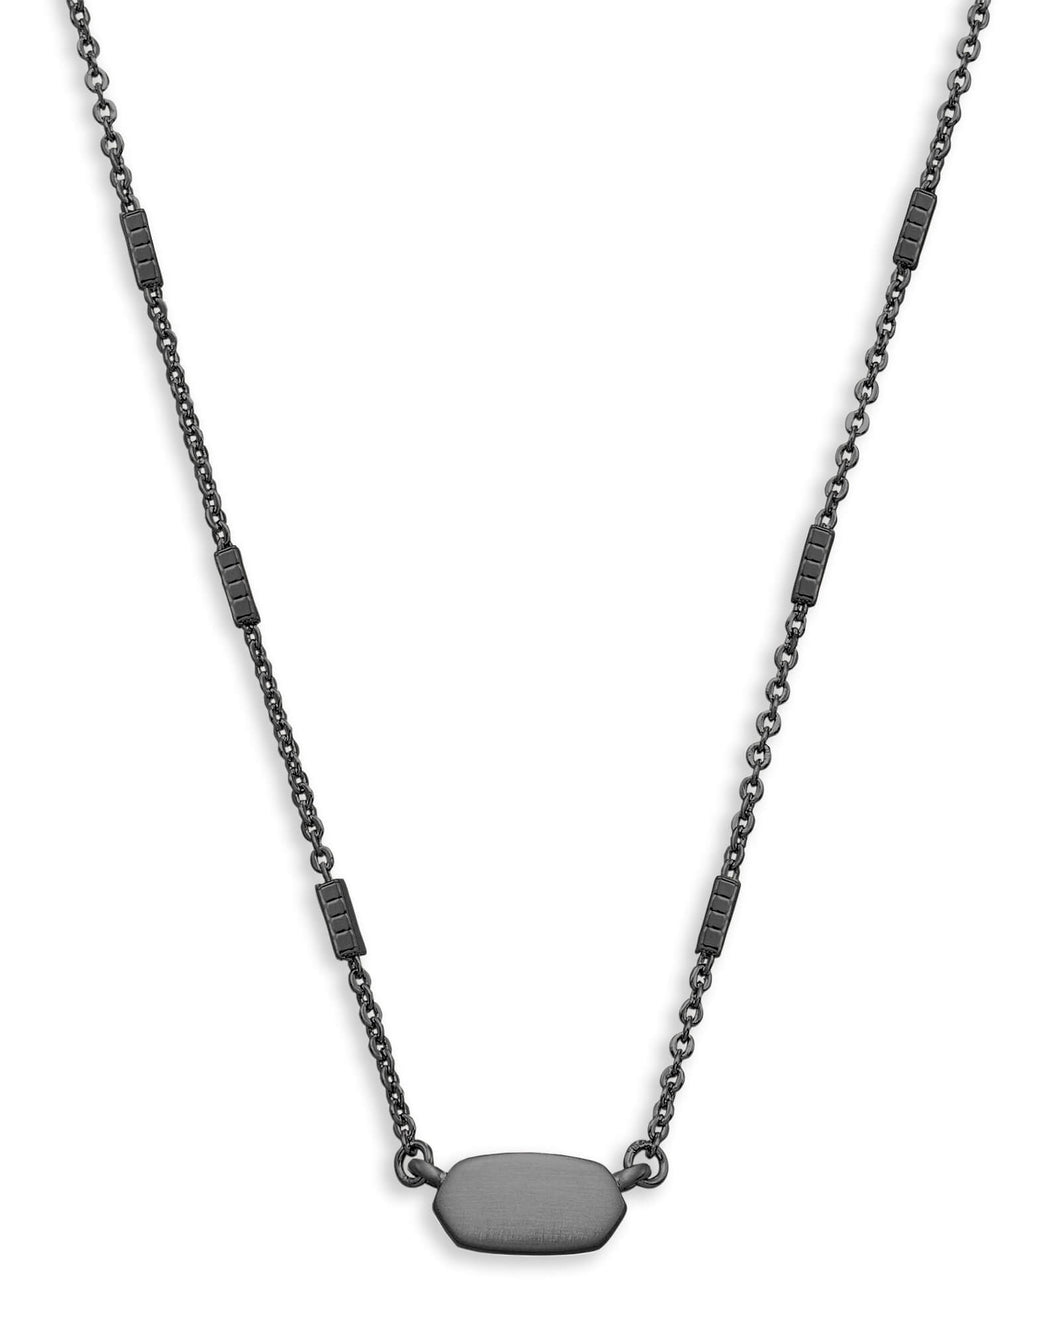 Fern Pendant Necklace in Gunmetal